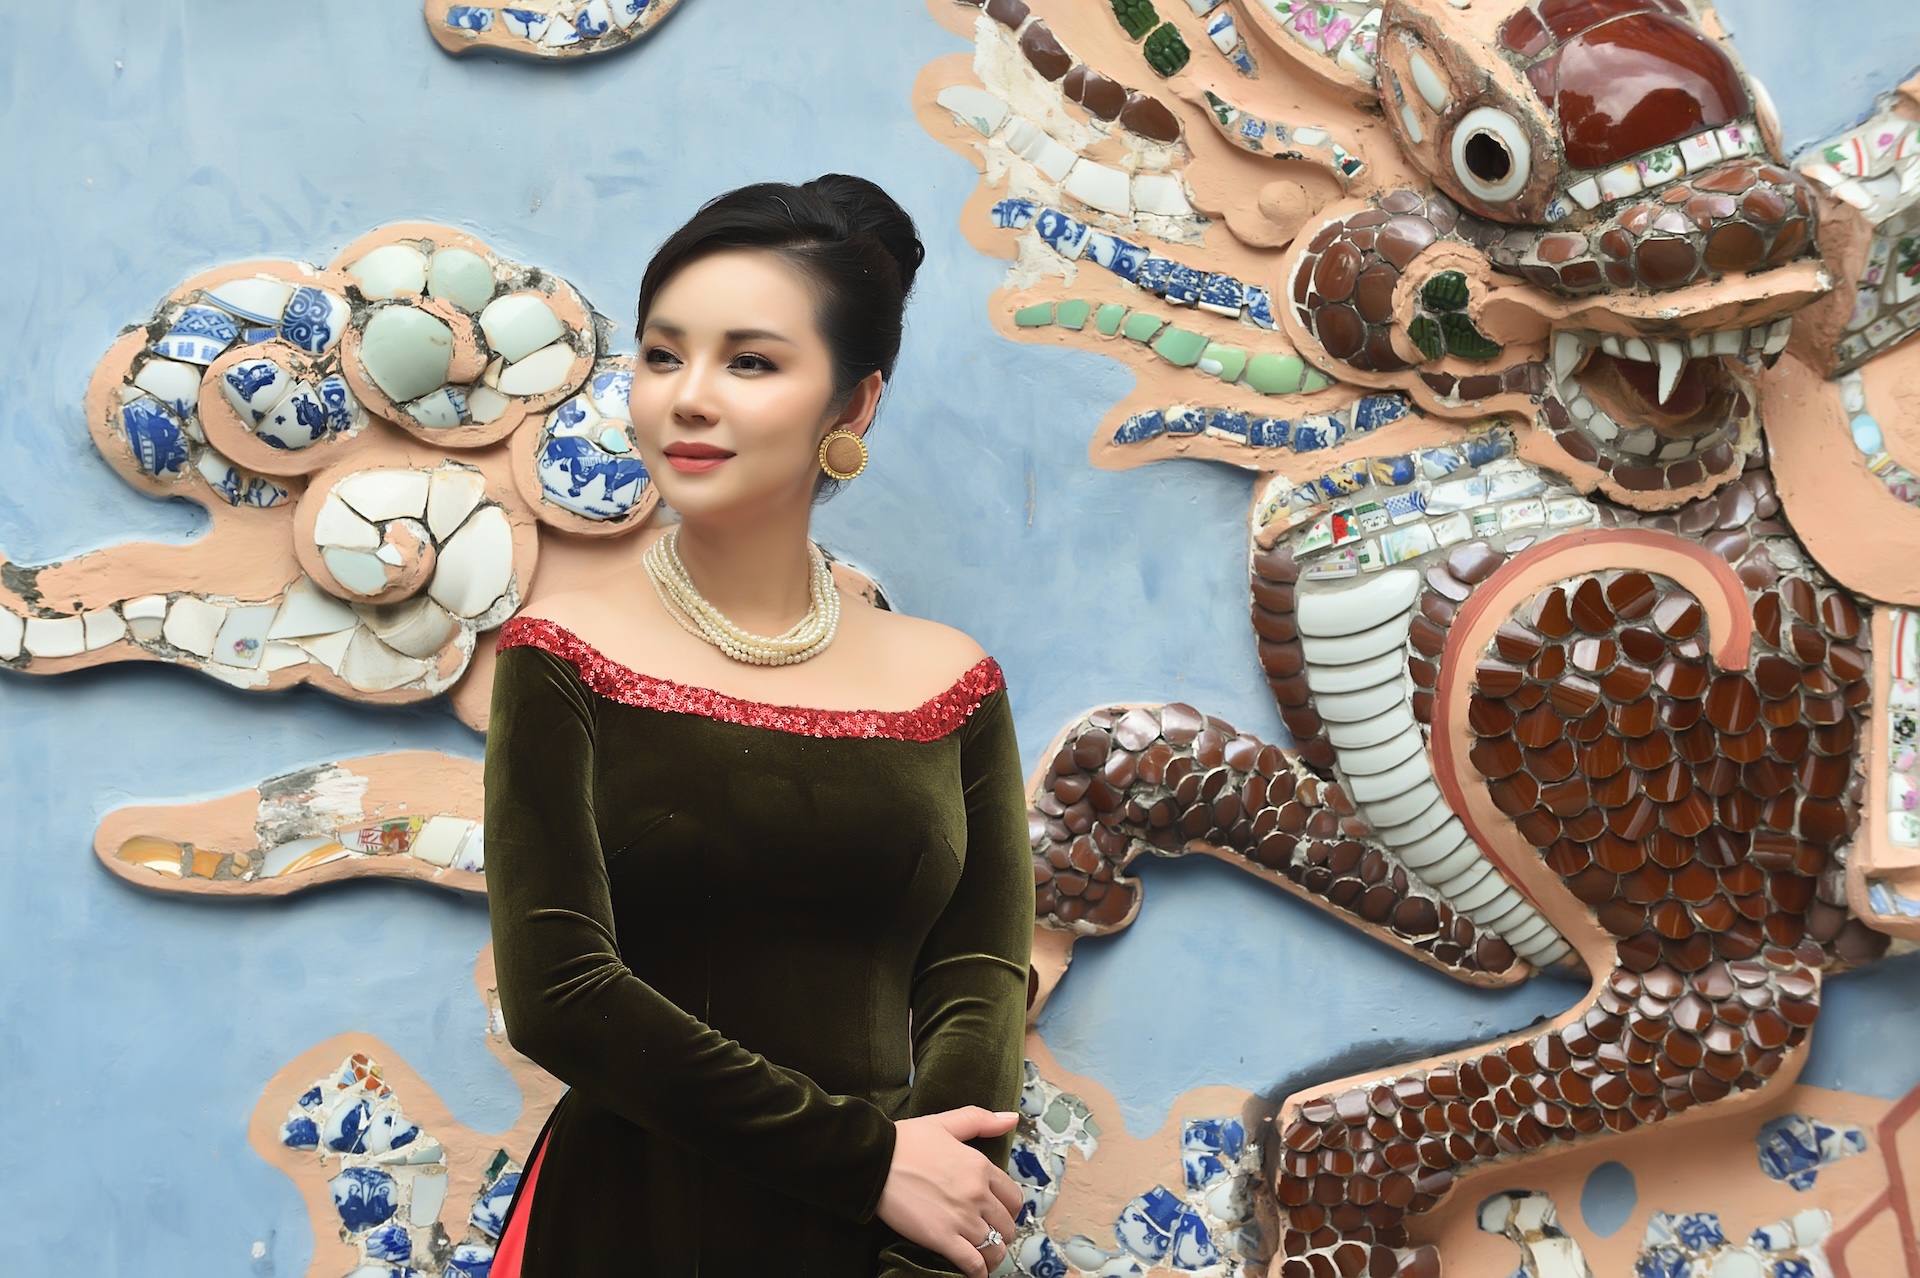 Cựu Hoa hậu Đại sứ Amy Lê Anh: "Luôn nhắc trong mình sứ mệnh như một đại sứ văn hóa - thương mại Việt Nam"